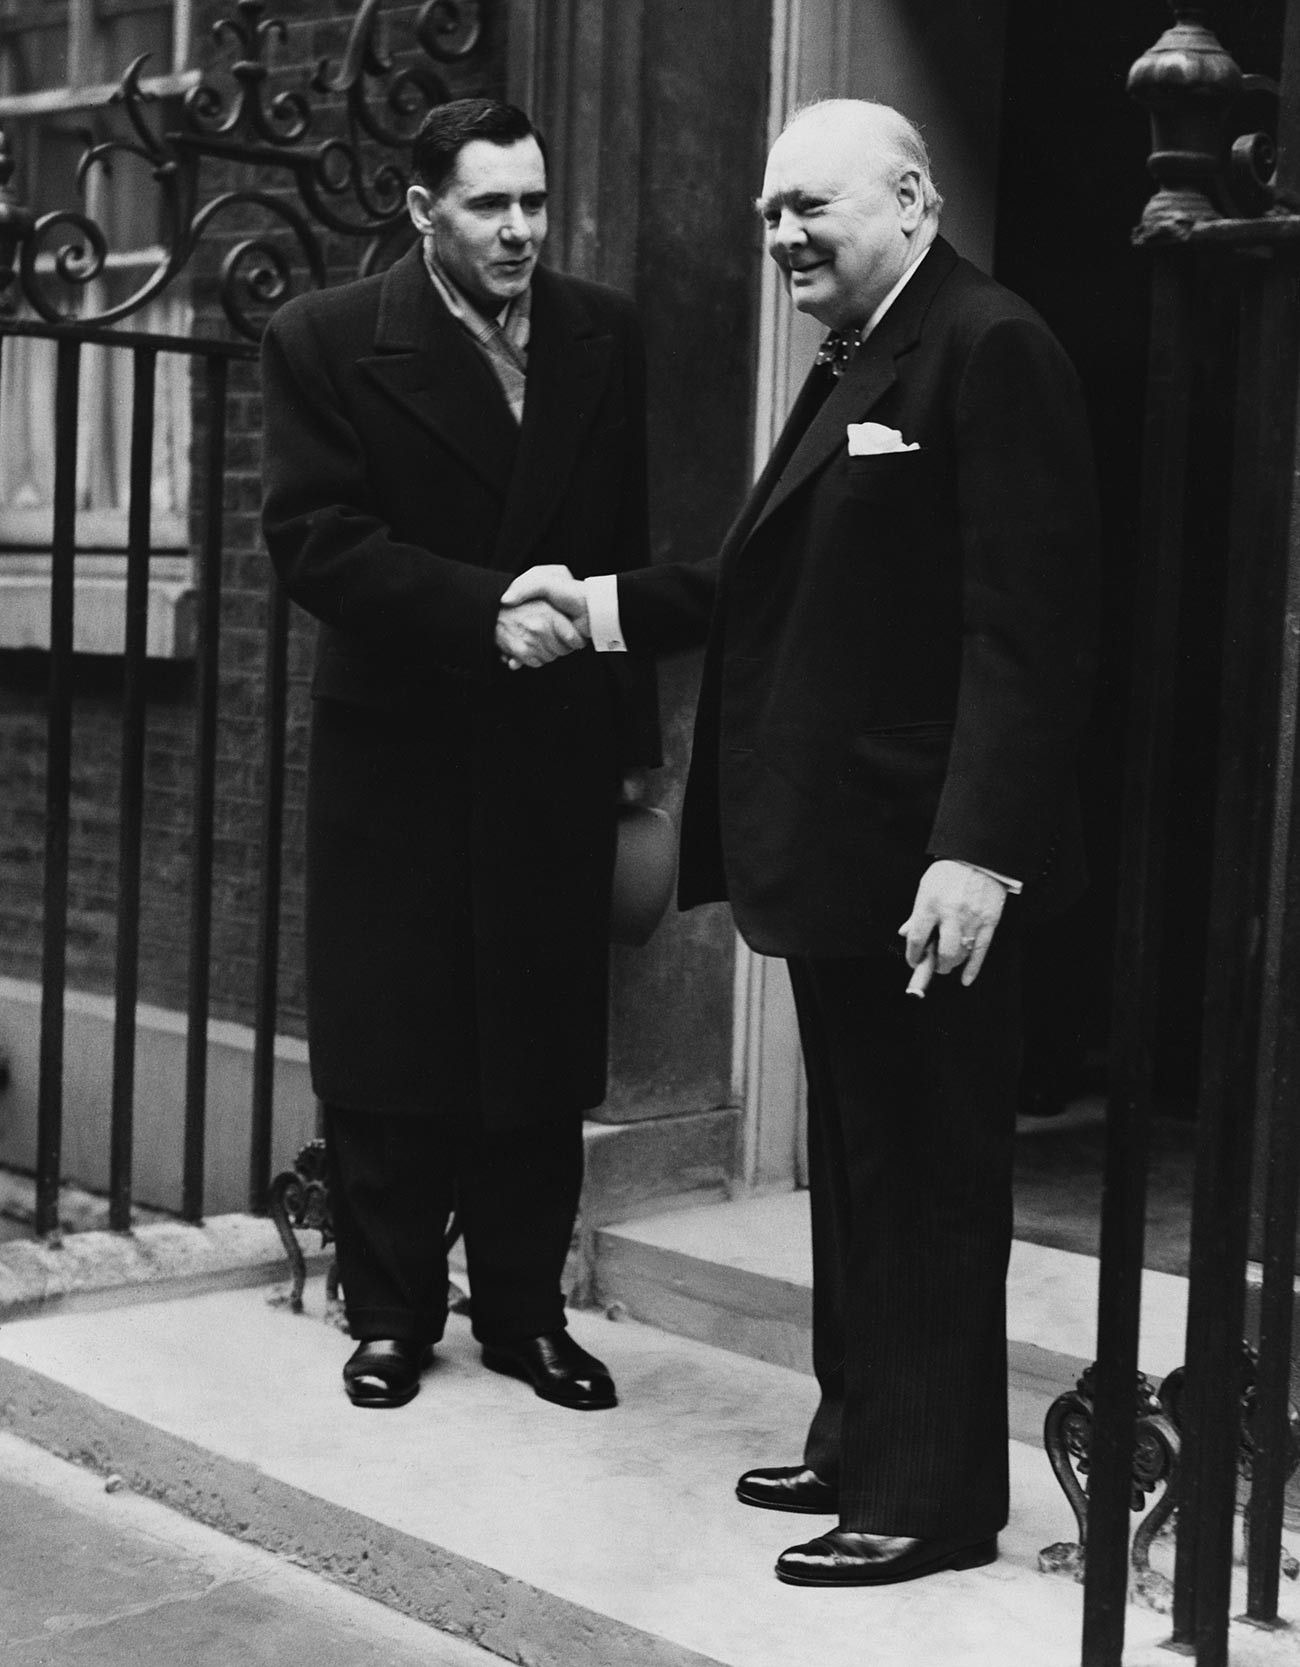 Gromiko se rokuje s konservativnim britanskim premierjem Winstonom Churchillom na ilici 10 Downing Street med obiskom v zahvalo britanski donaciji hrane ZSSR